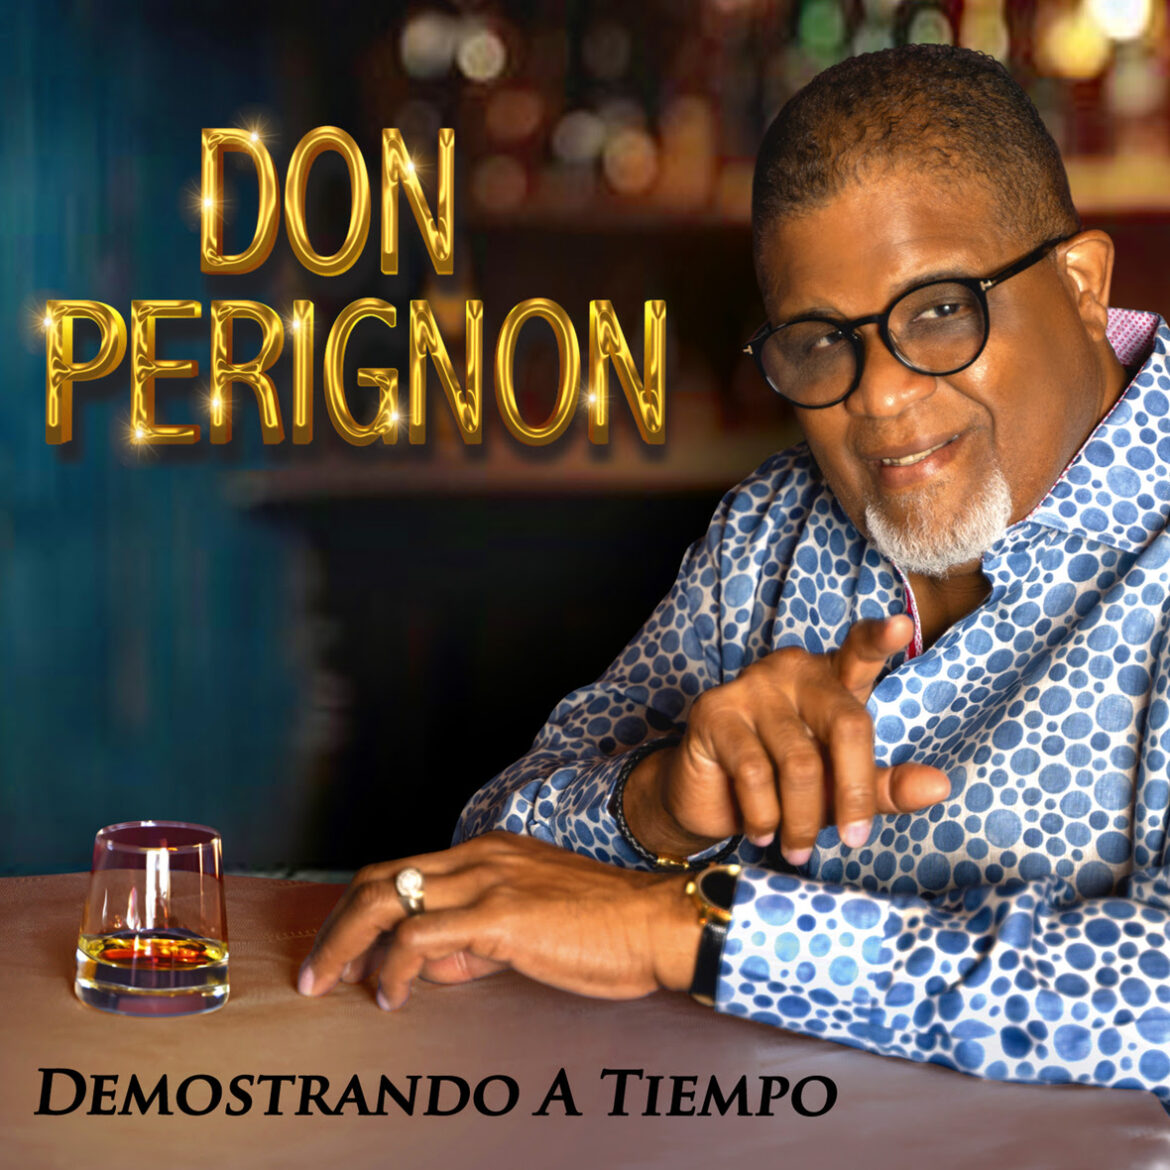 La Puertorriqueña de Don Perignon presenta su nuevo trabajo discográfico “Demostrando a Tiempo”